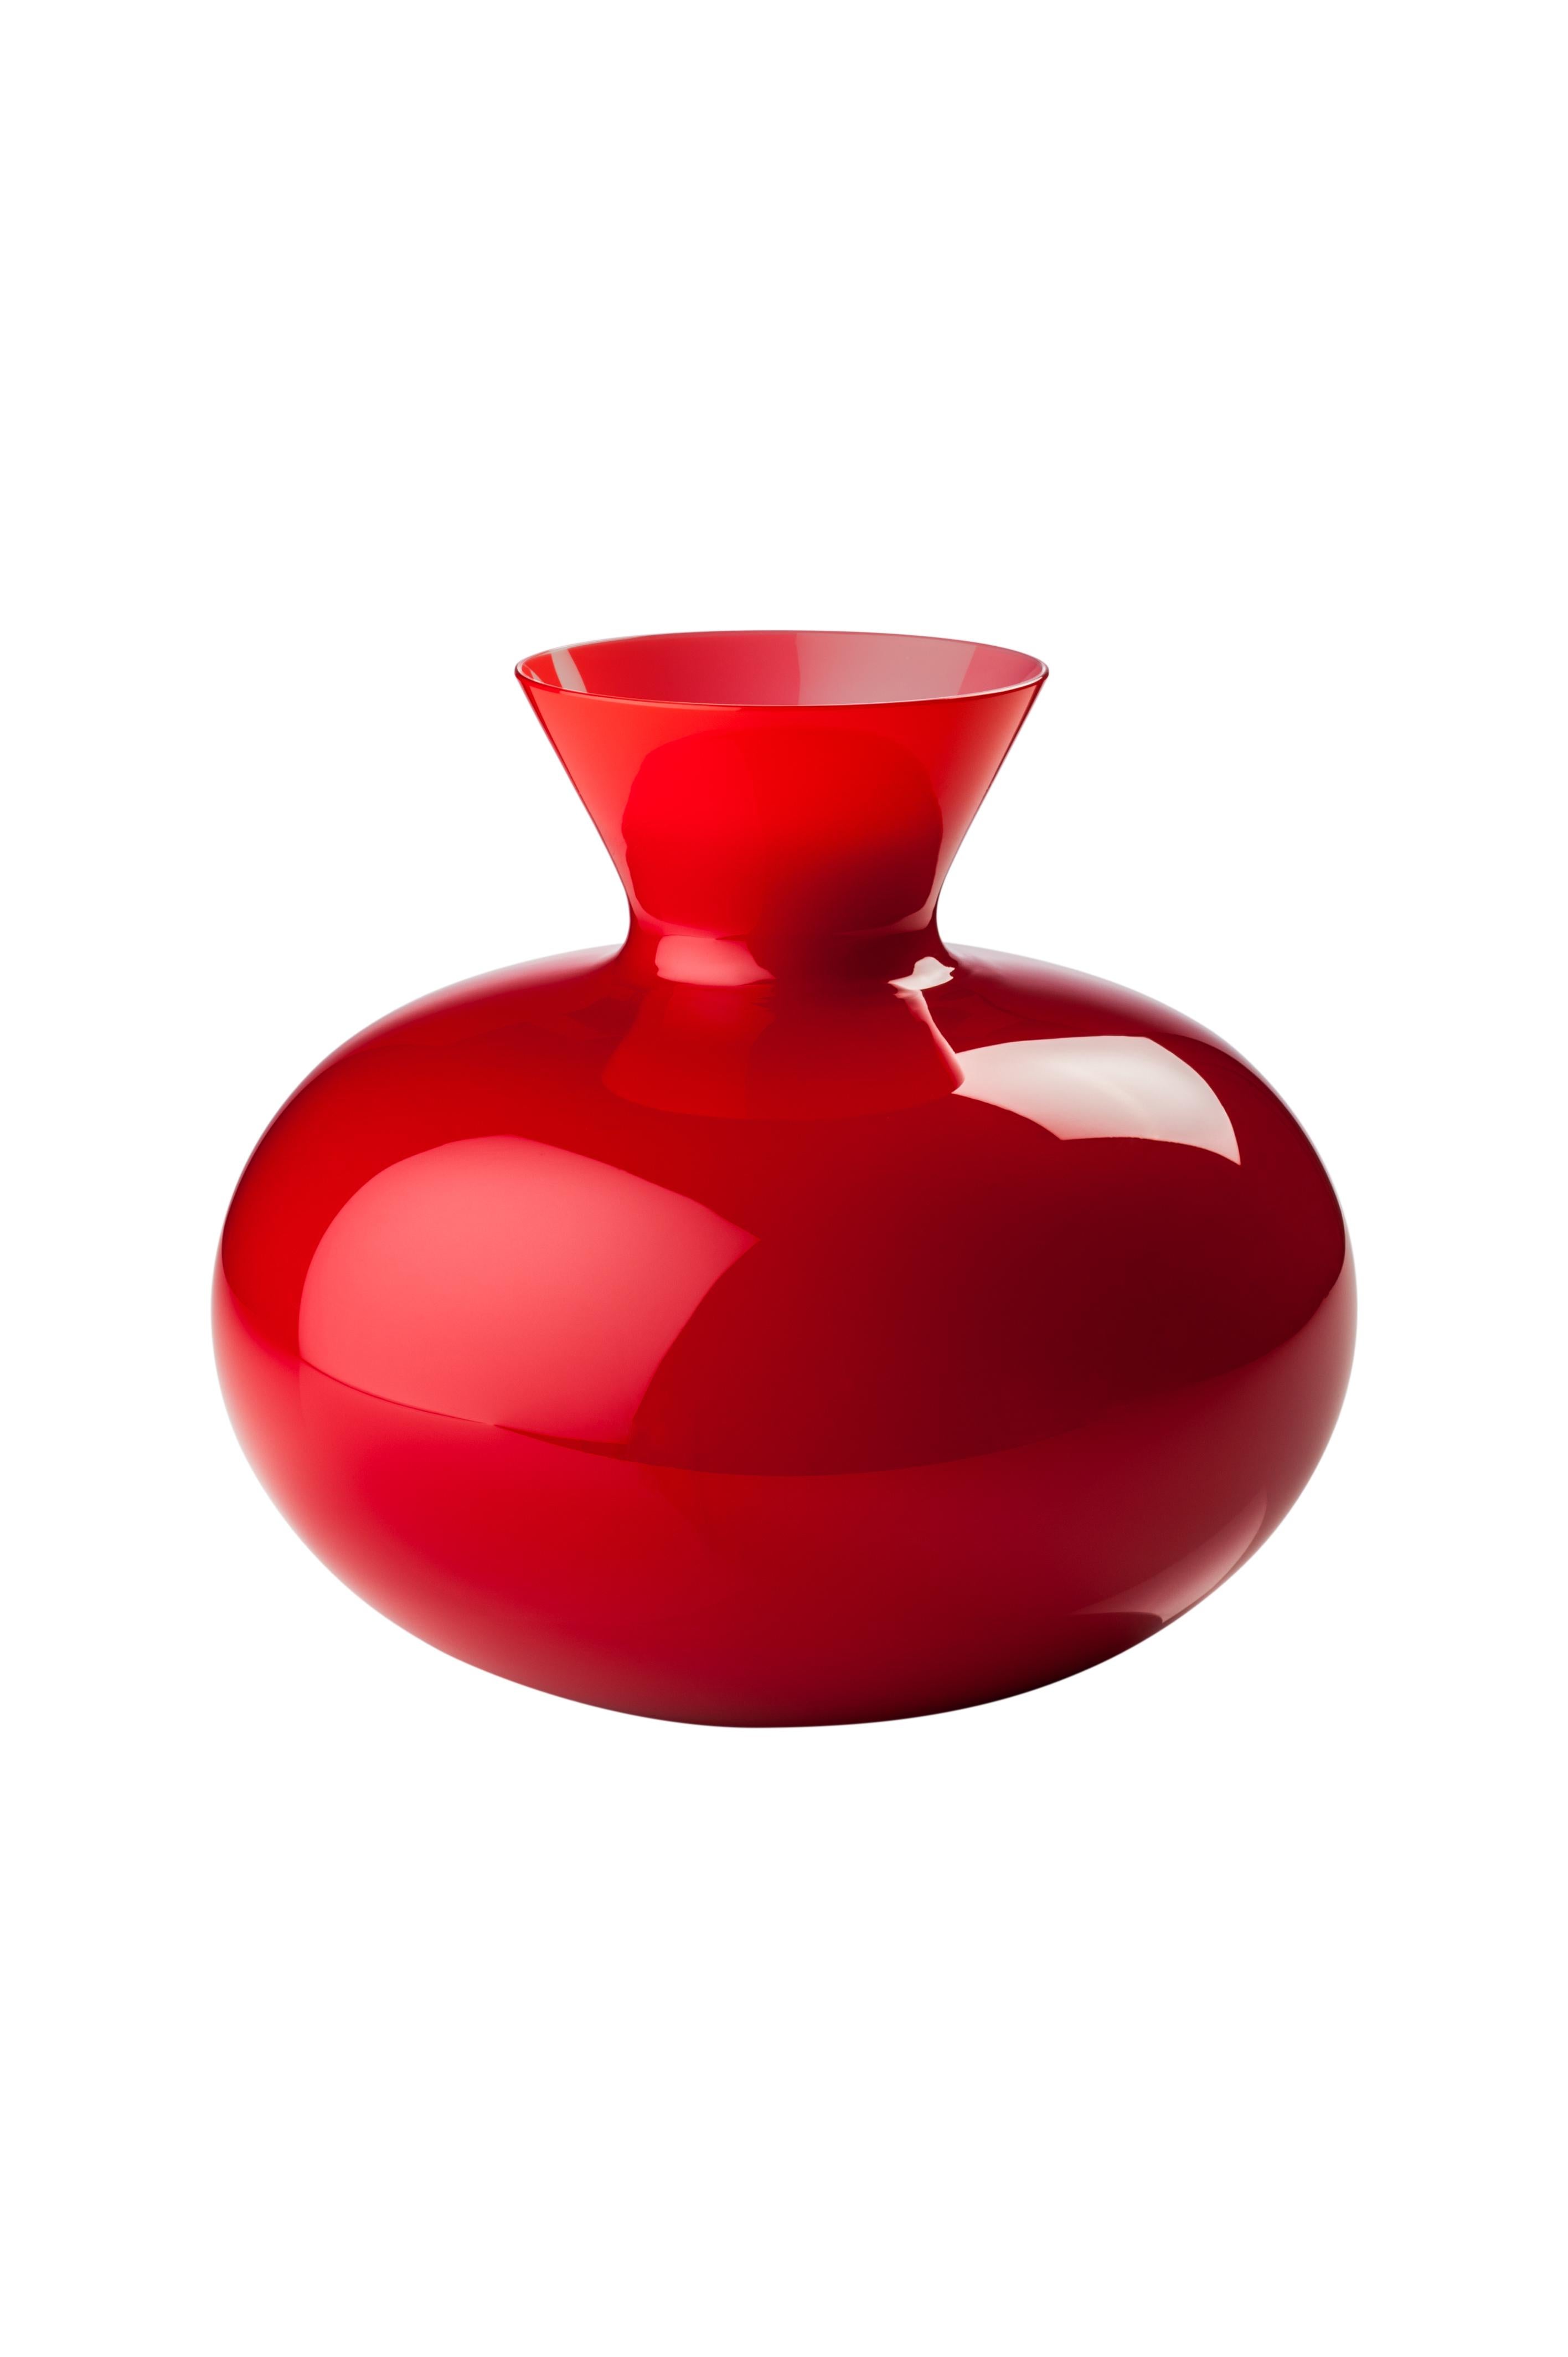 Vase en verre Venini à corps rond et col de forme angulaire en rouge conçu en 2016. Parfait pour la décoration intérieure en tant que conteneur ou pièce forte pour n'importe quelle pièce. Egalement disponible dans d'autres couleurs sur